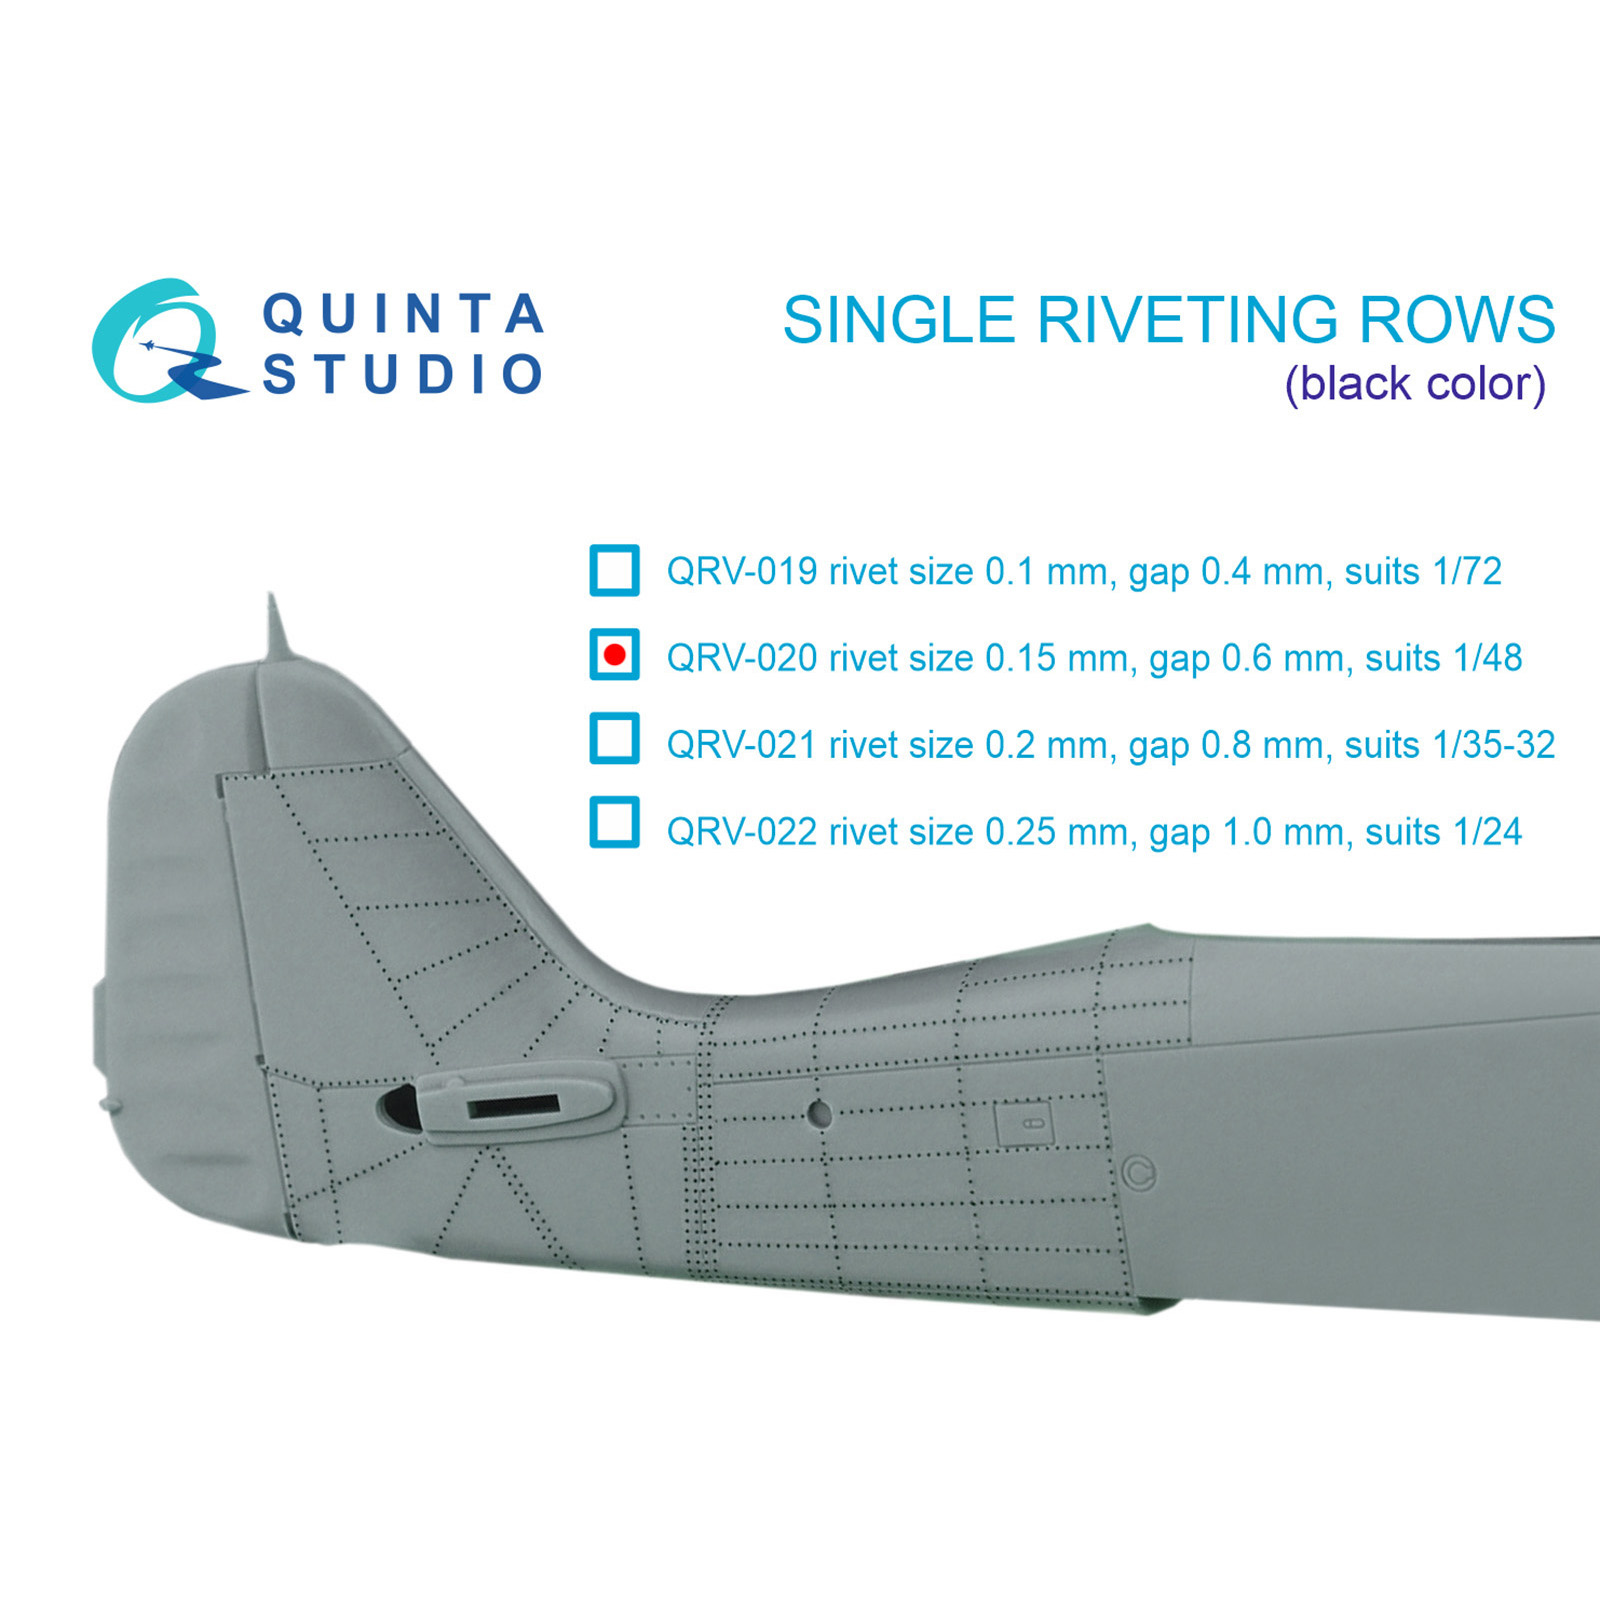 QRV-020 Quinta Studio 1/48 Одиночные клепочные ряды (размер клепки 0.15 mm, интервал 0.6 mm), черные, общая длина 6,2 m